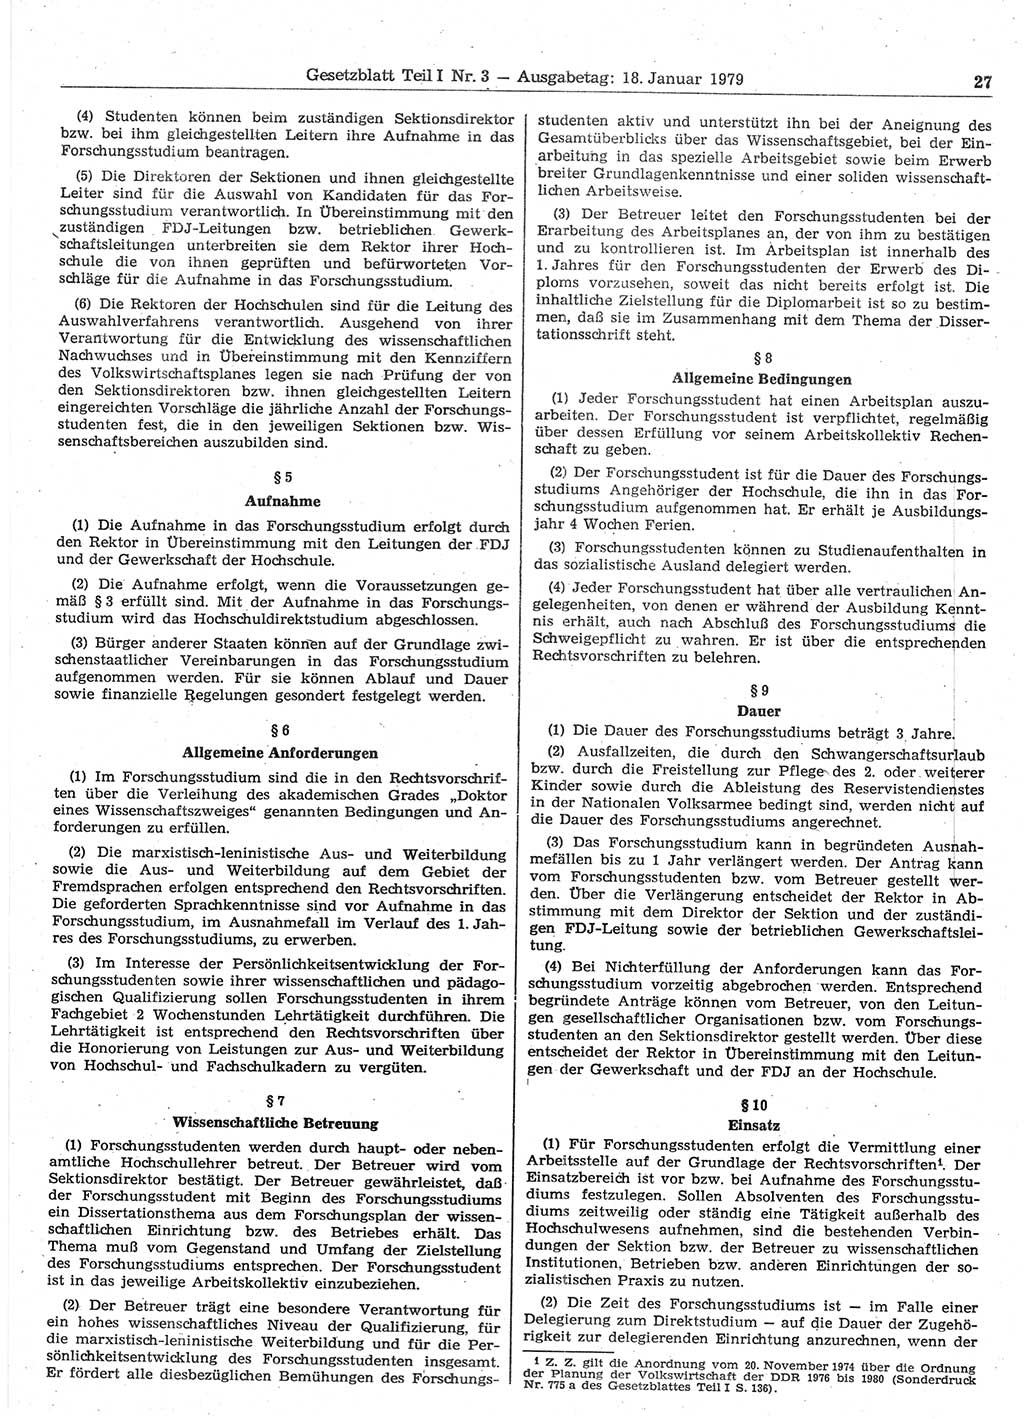 Gesetzblatt (GBl.) der Deutschen Demokratischen Republik (DDR) Teil Ⅰ 1979, Seite 27 (GBl. DDR Ⅰ 1979, S. 27)